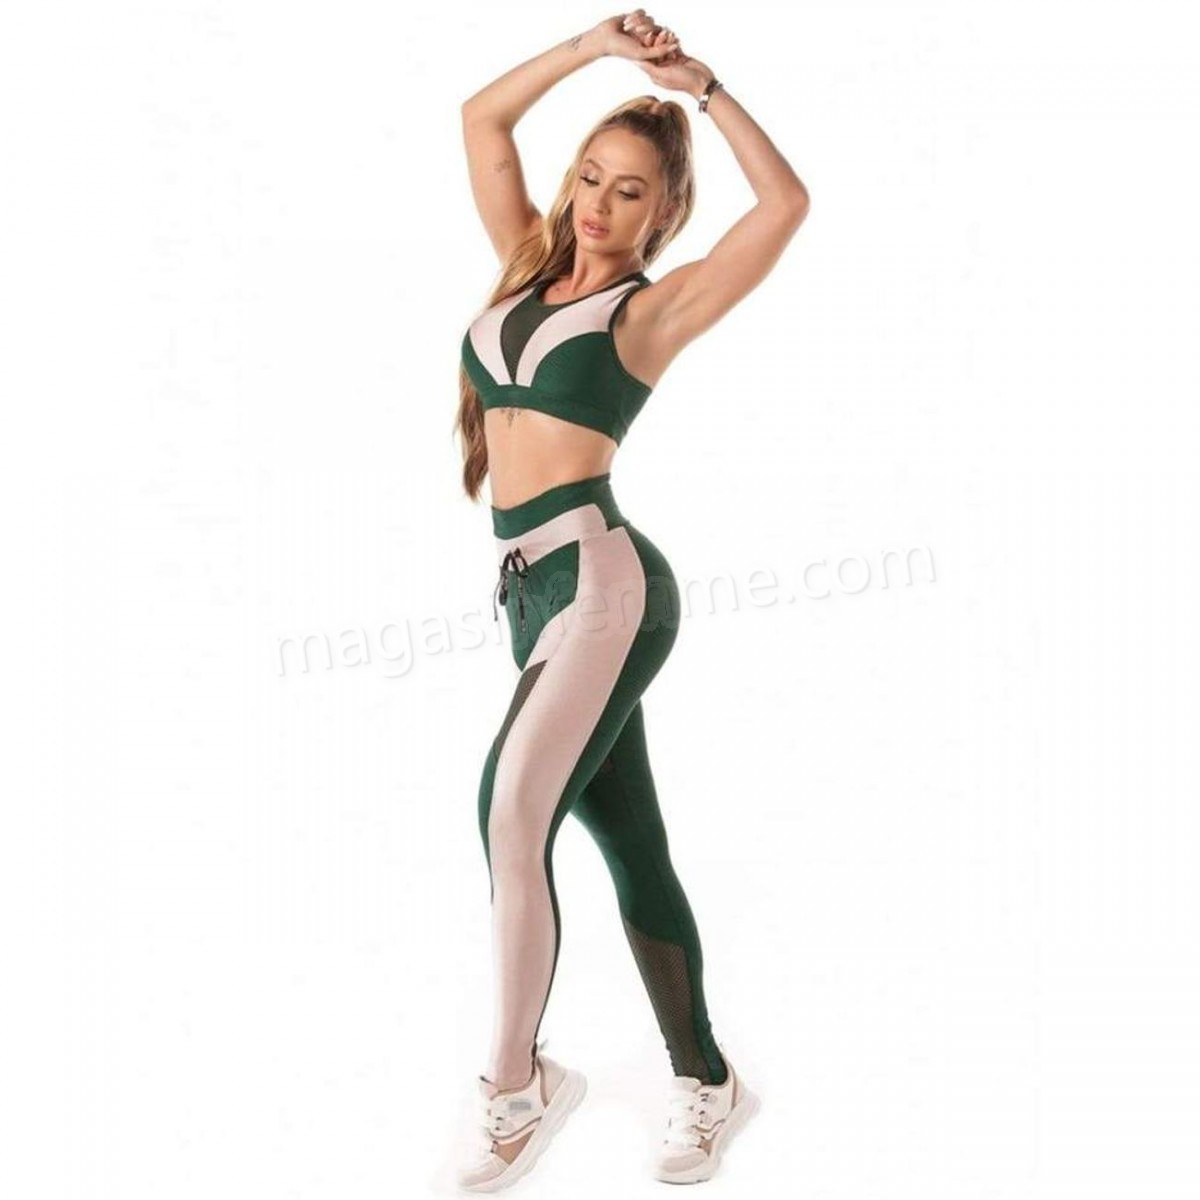 Let's Gym-Musculation femme Let's Gym Legging Femme Botanical Jacquard Let's Gym en solde - -3